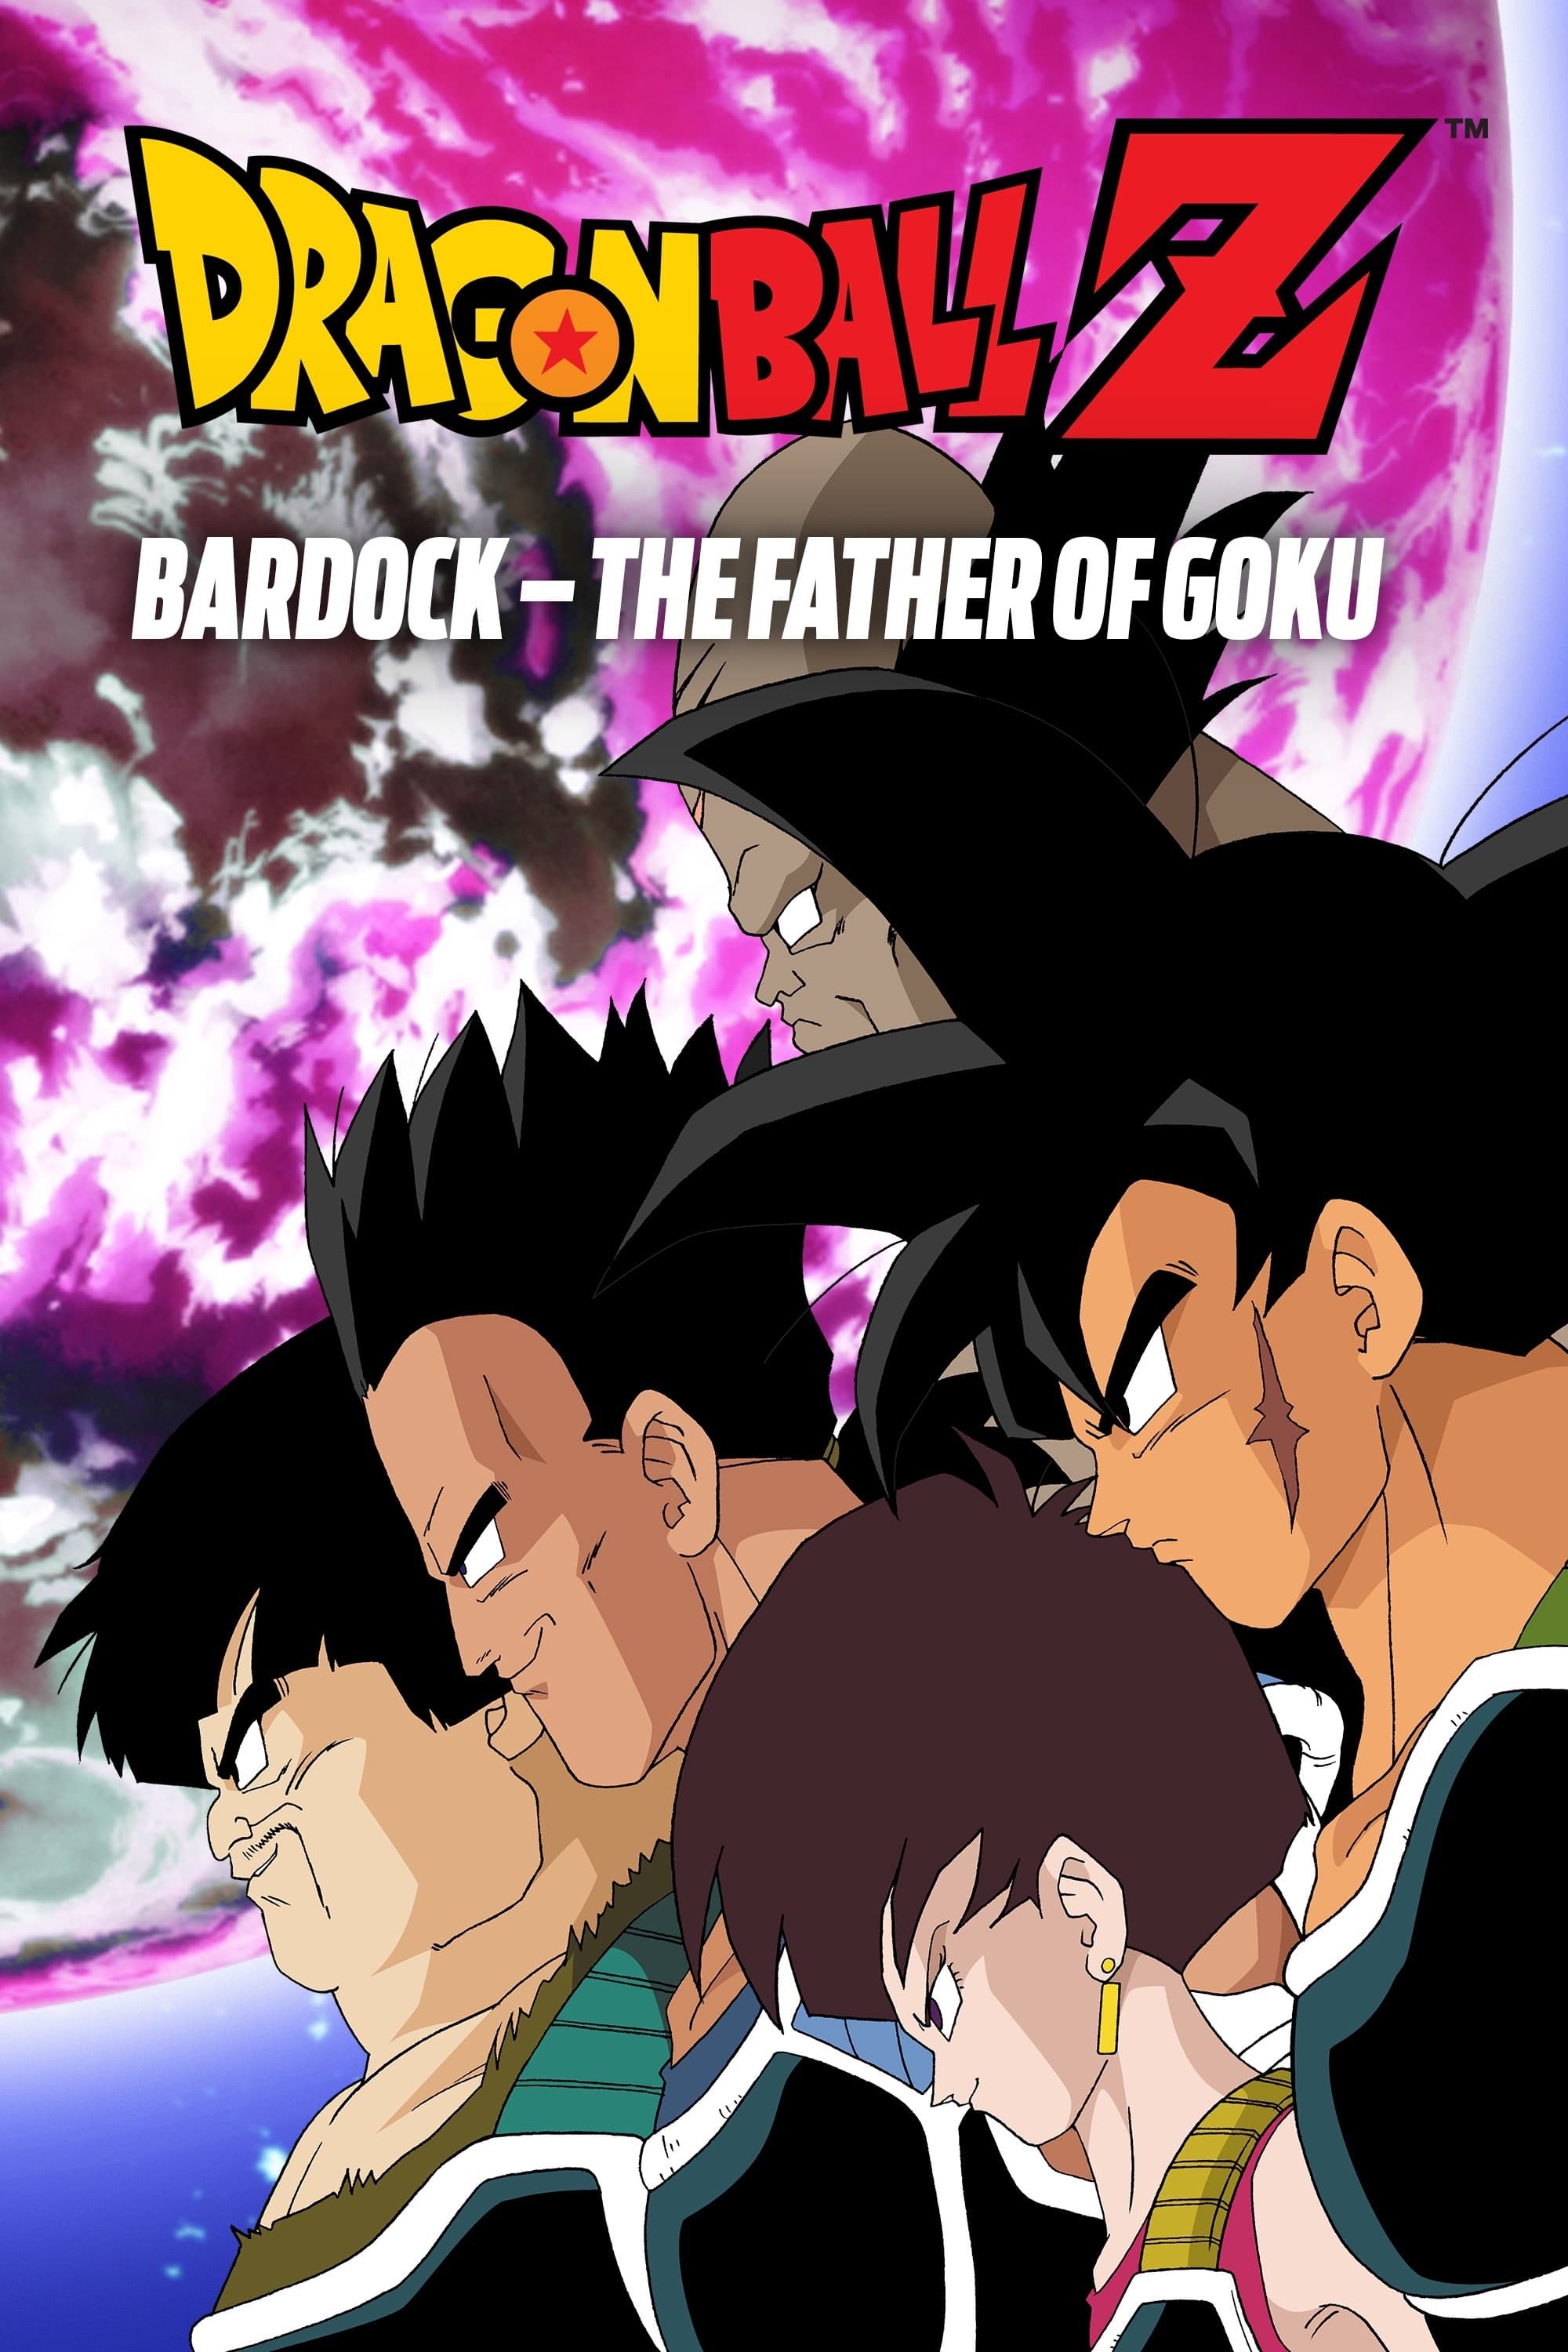 Dragon Ball Z: La Batalla de Freezer contra el Padre de Goku (1990) -  Posters — The Movie Database (TMDB)